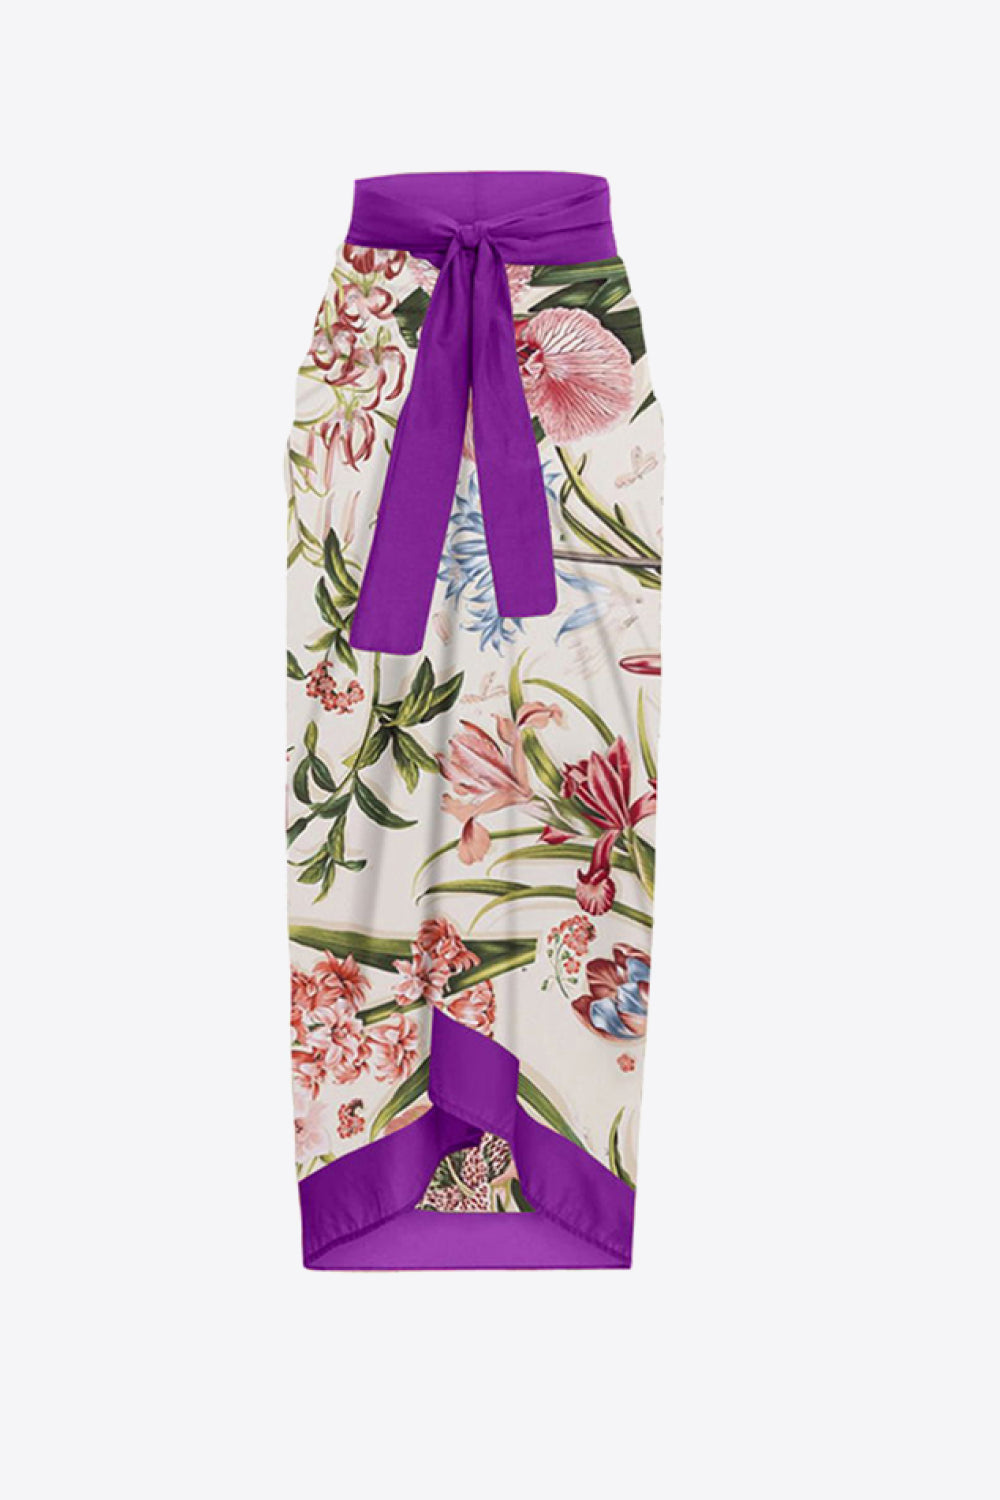 Floral Tie Shoulder Two-Piece Swim Set - The Fashion Unicorn